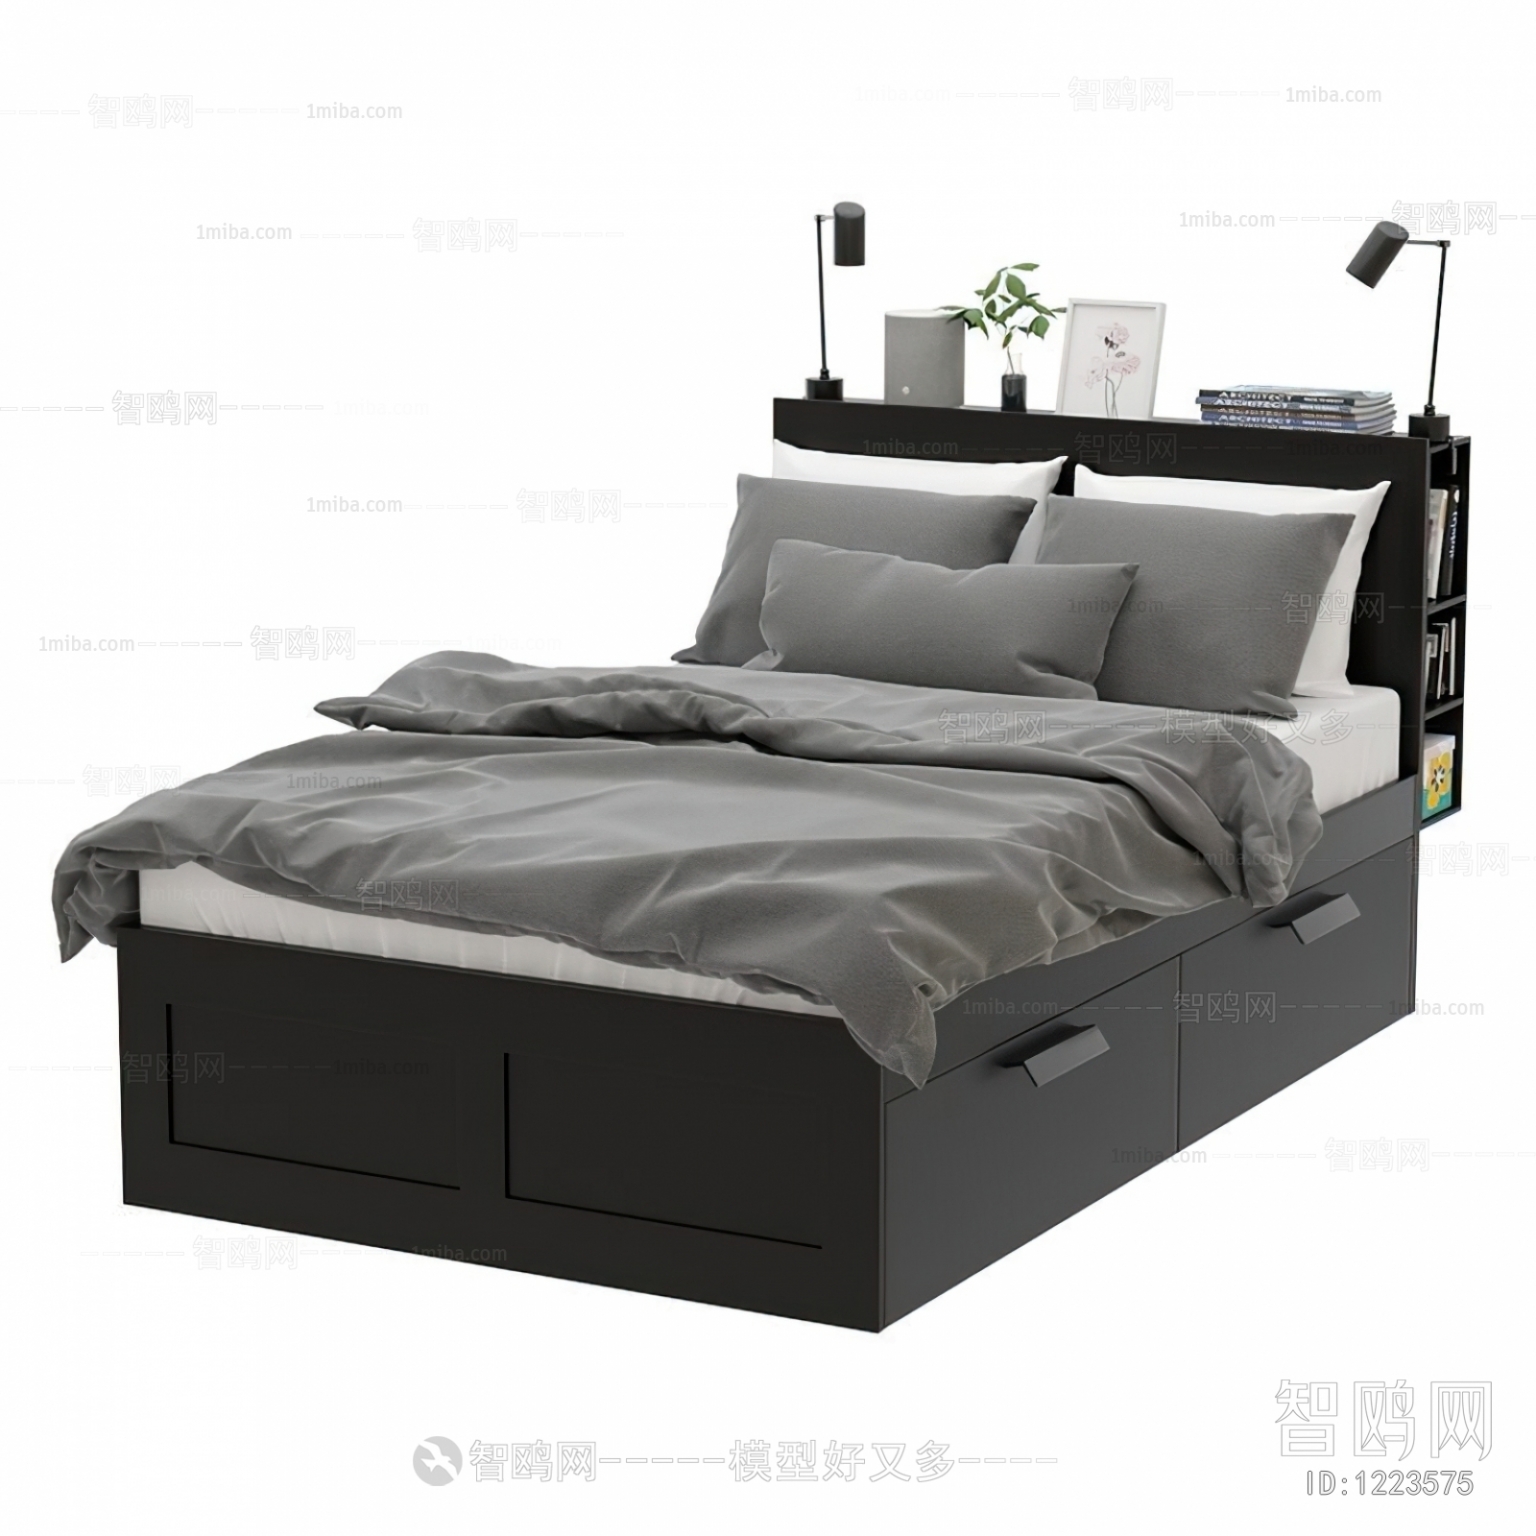 单人位公寓床 - 重庆民意家具制造有限公司